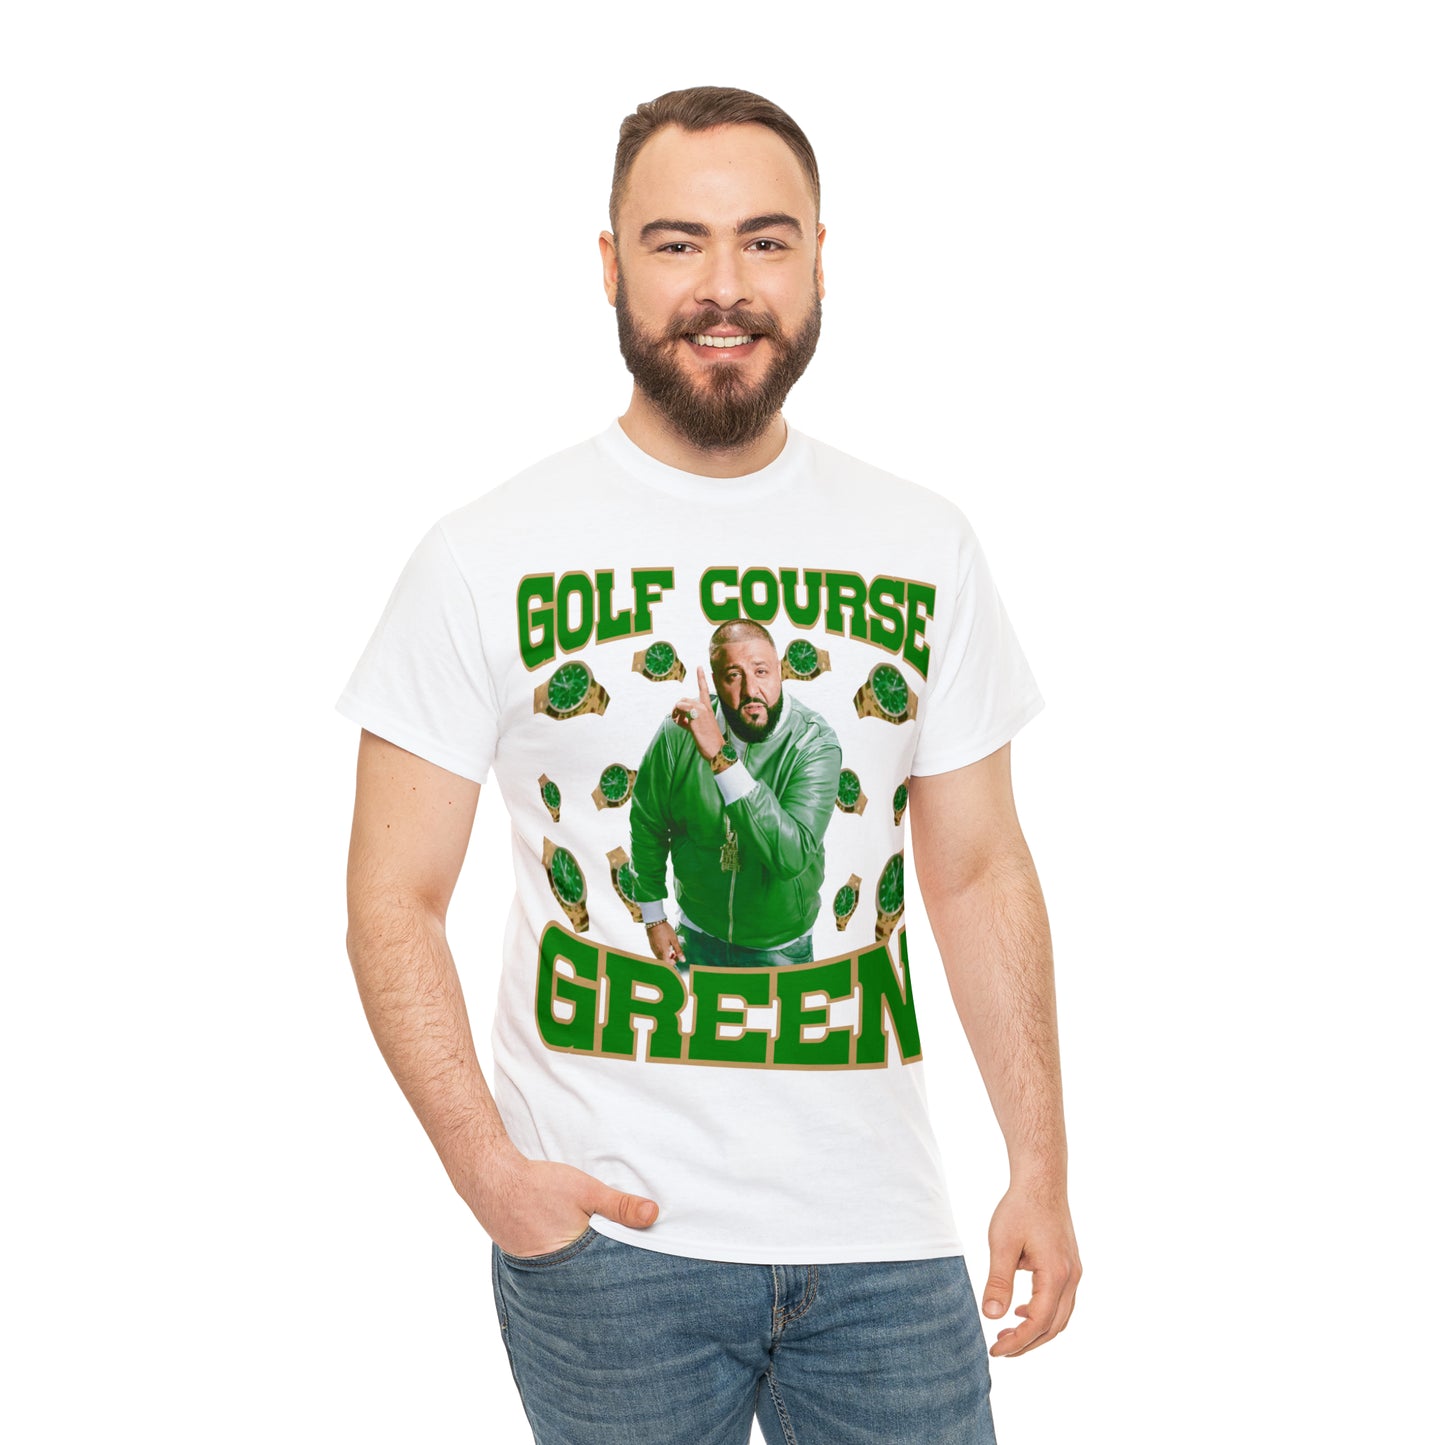 GOLF COURSE GREEN